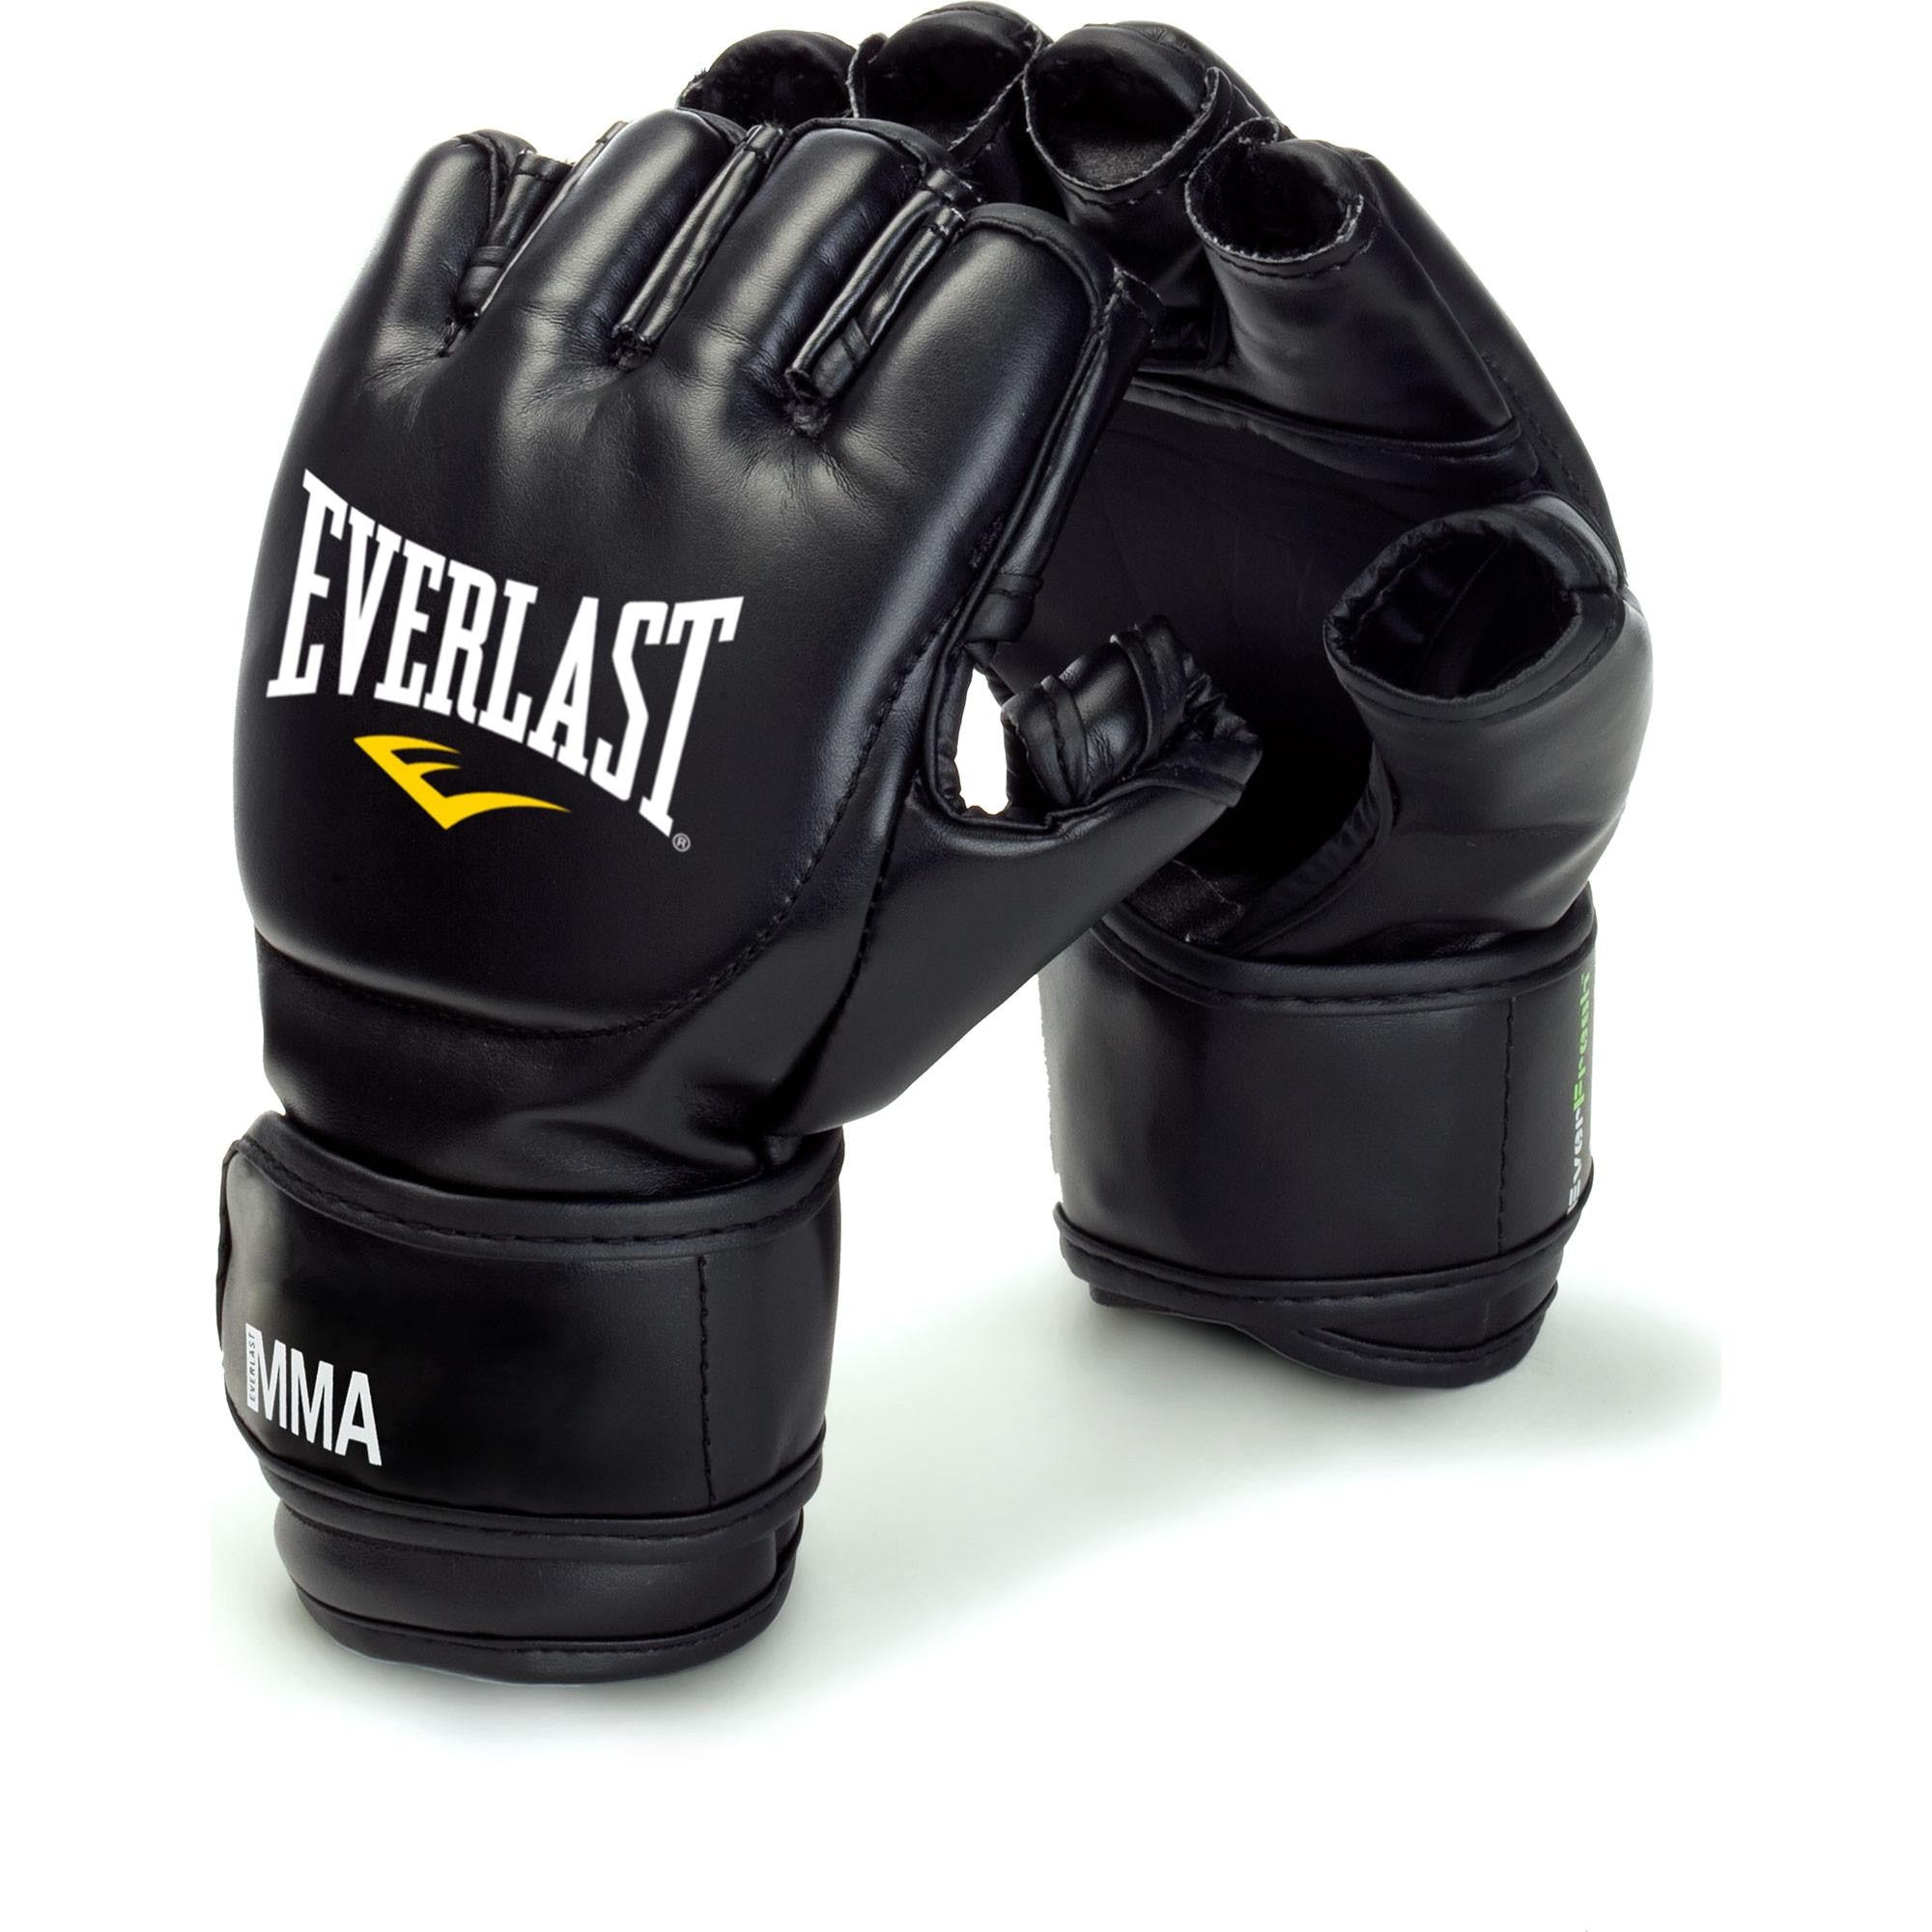 Yoga Gloves - Pilates Gloves - Wrist Assured Gloves